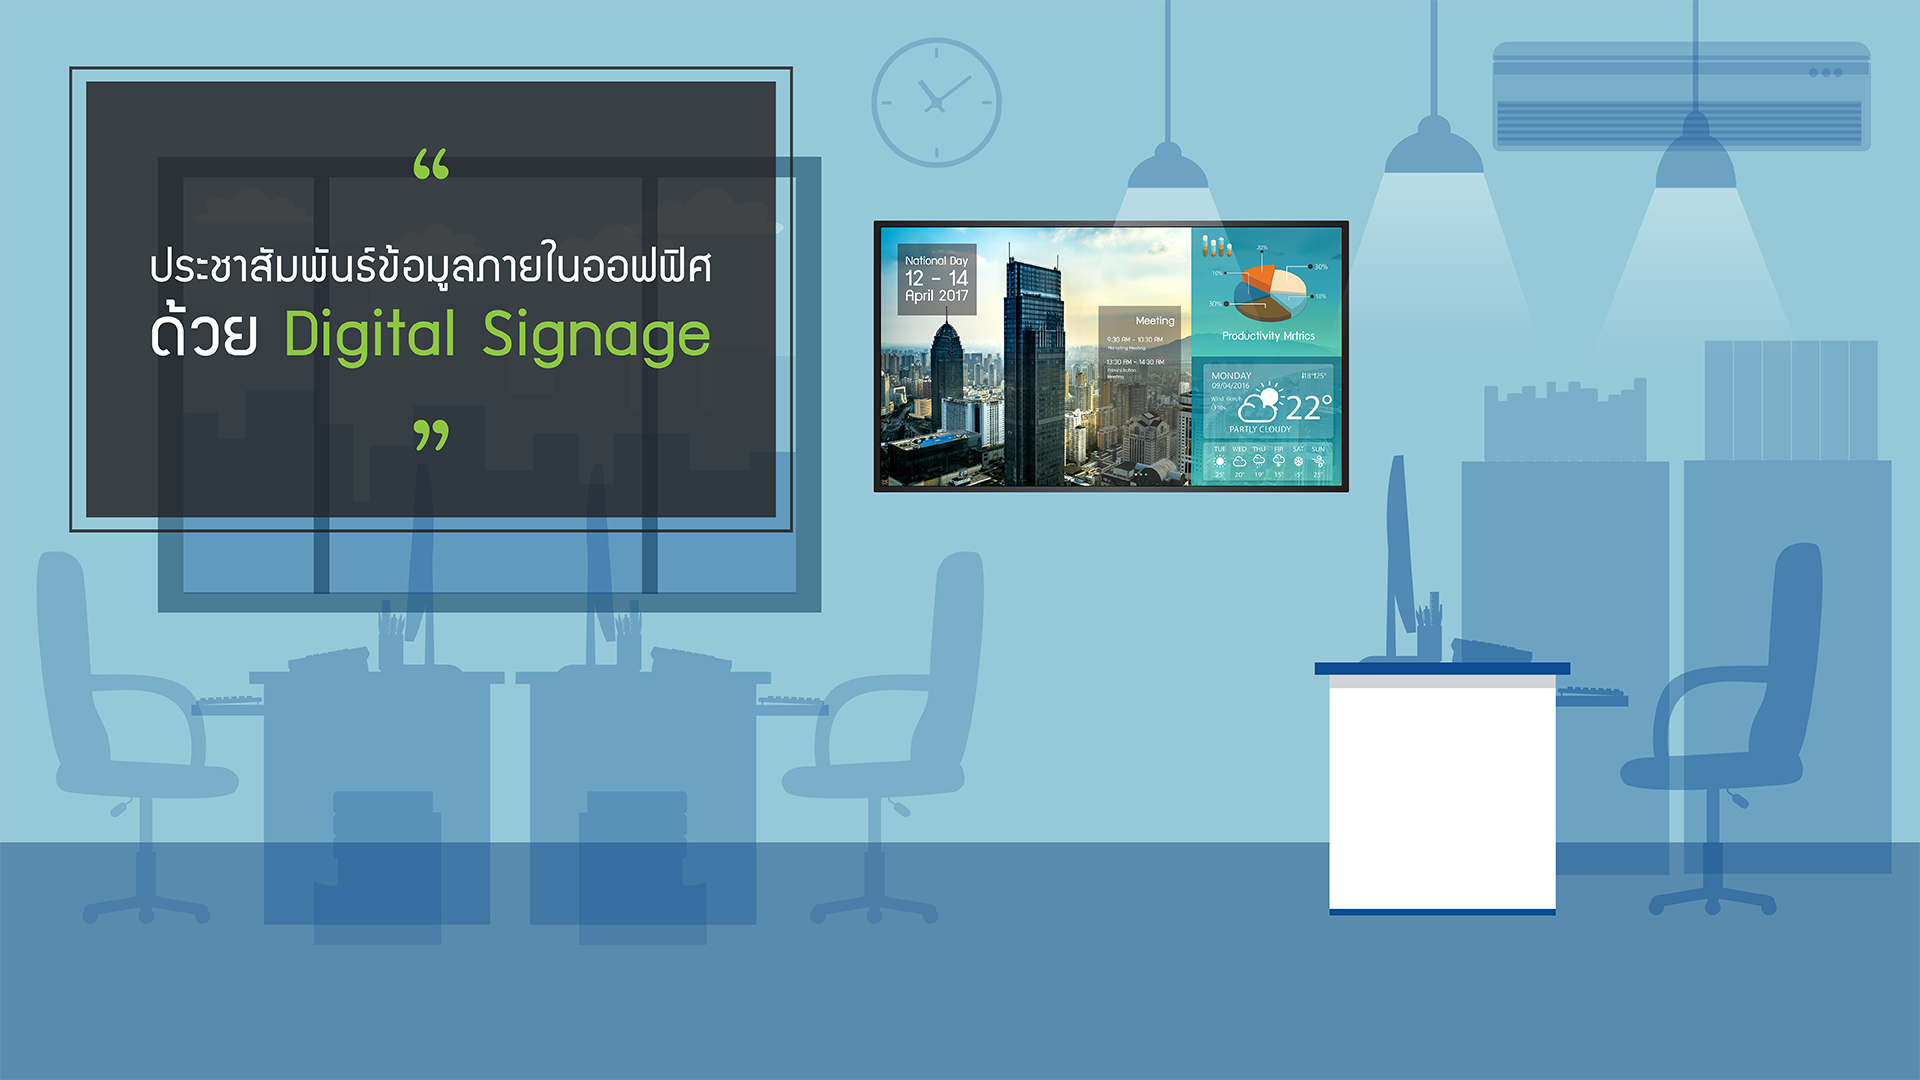 Digital Signage สำหรับภายในออฟฟิศสำนักงาน หรือโรงงาน